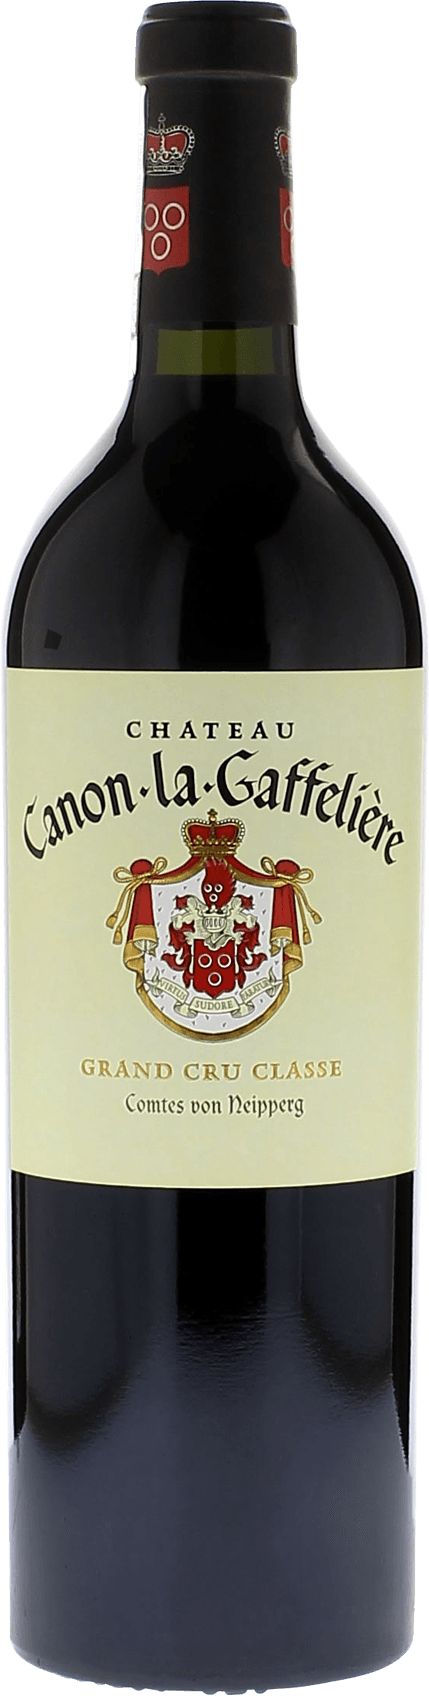 Canon la gaffeliere 2019 1er Grand cru class Saint-Emilion, Bordeaux rouge